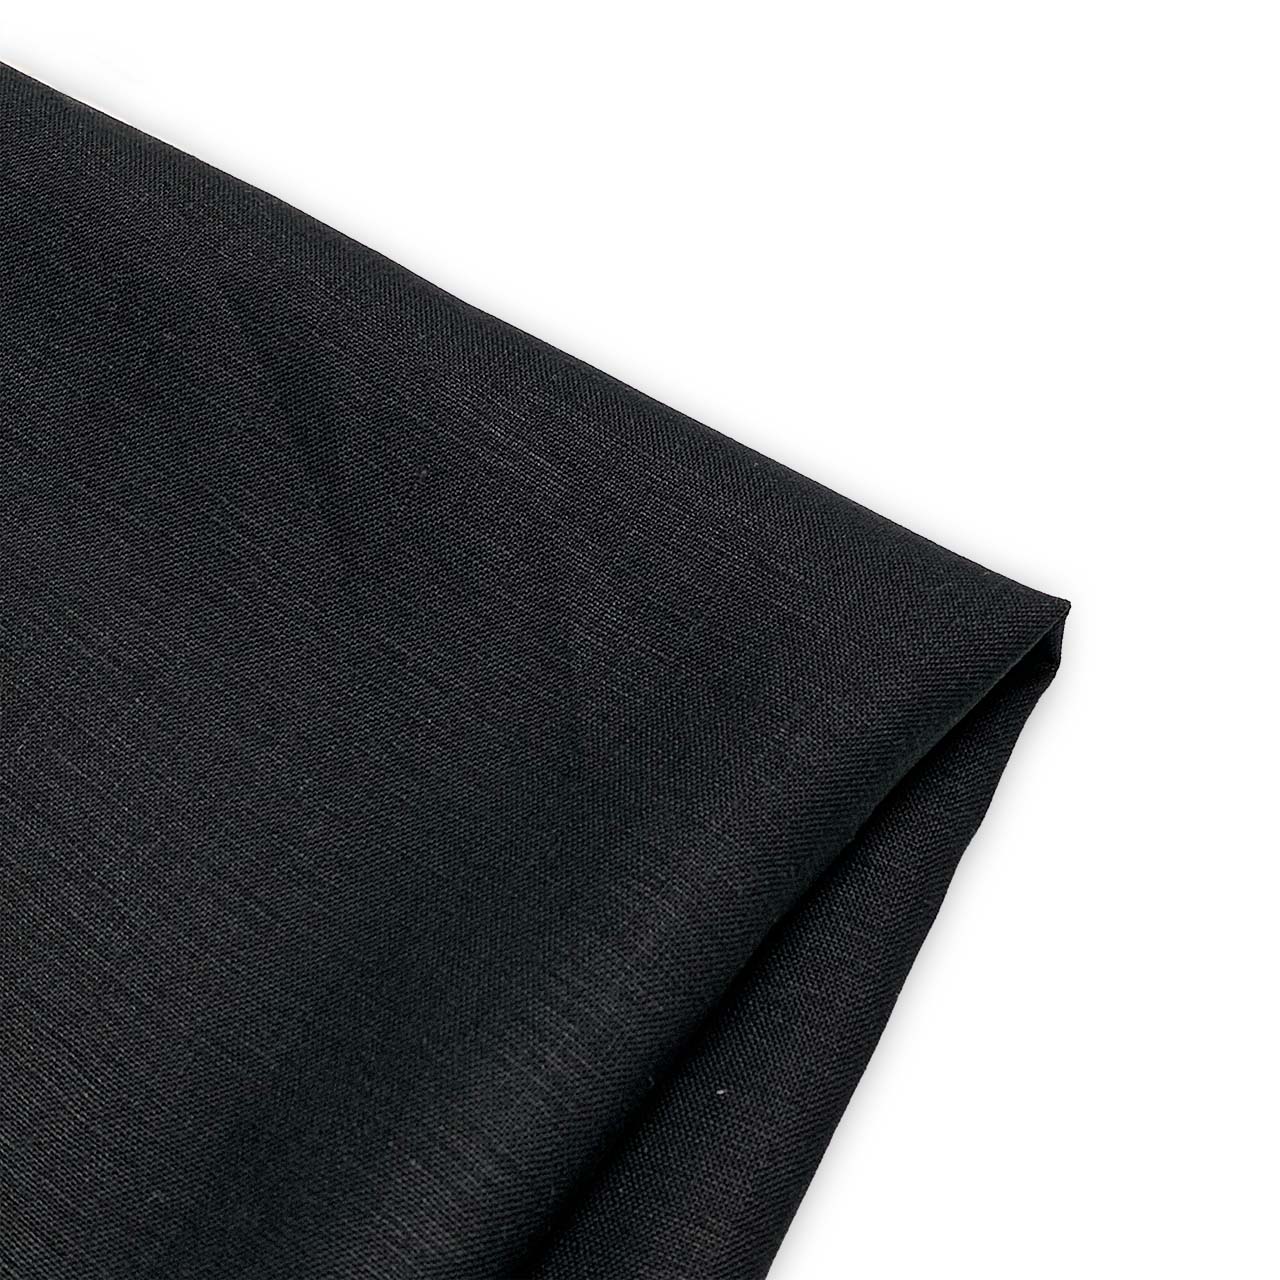 linen fabric heavy weight black linen - moda linen fabric collection